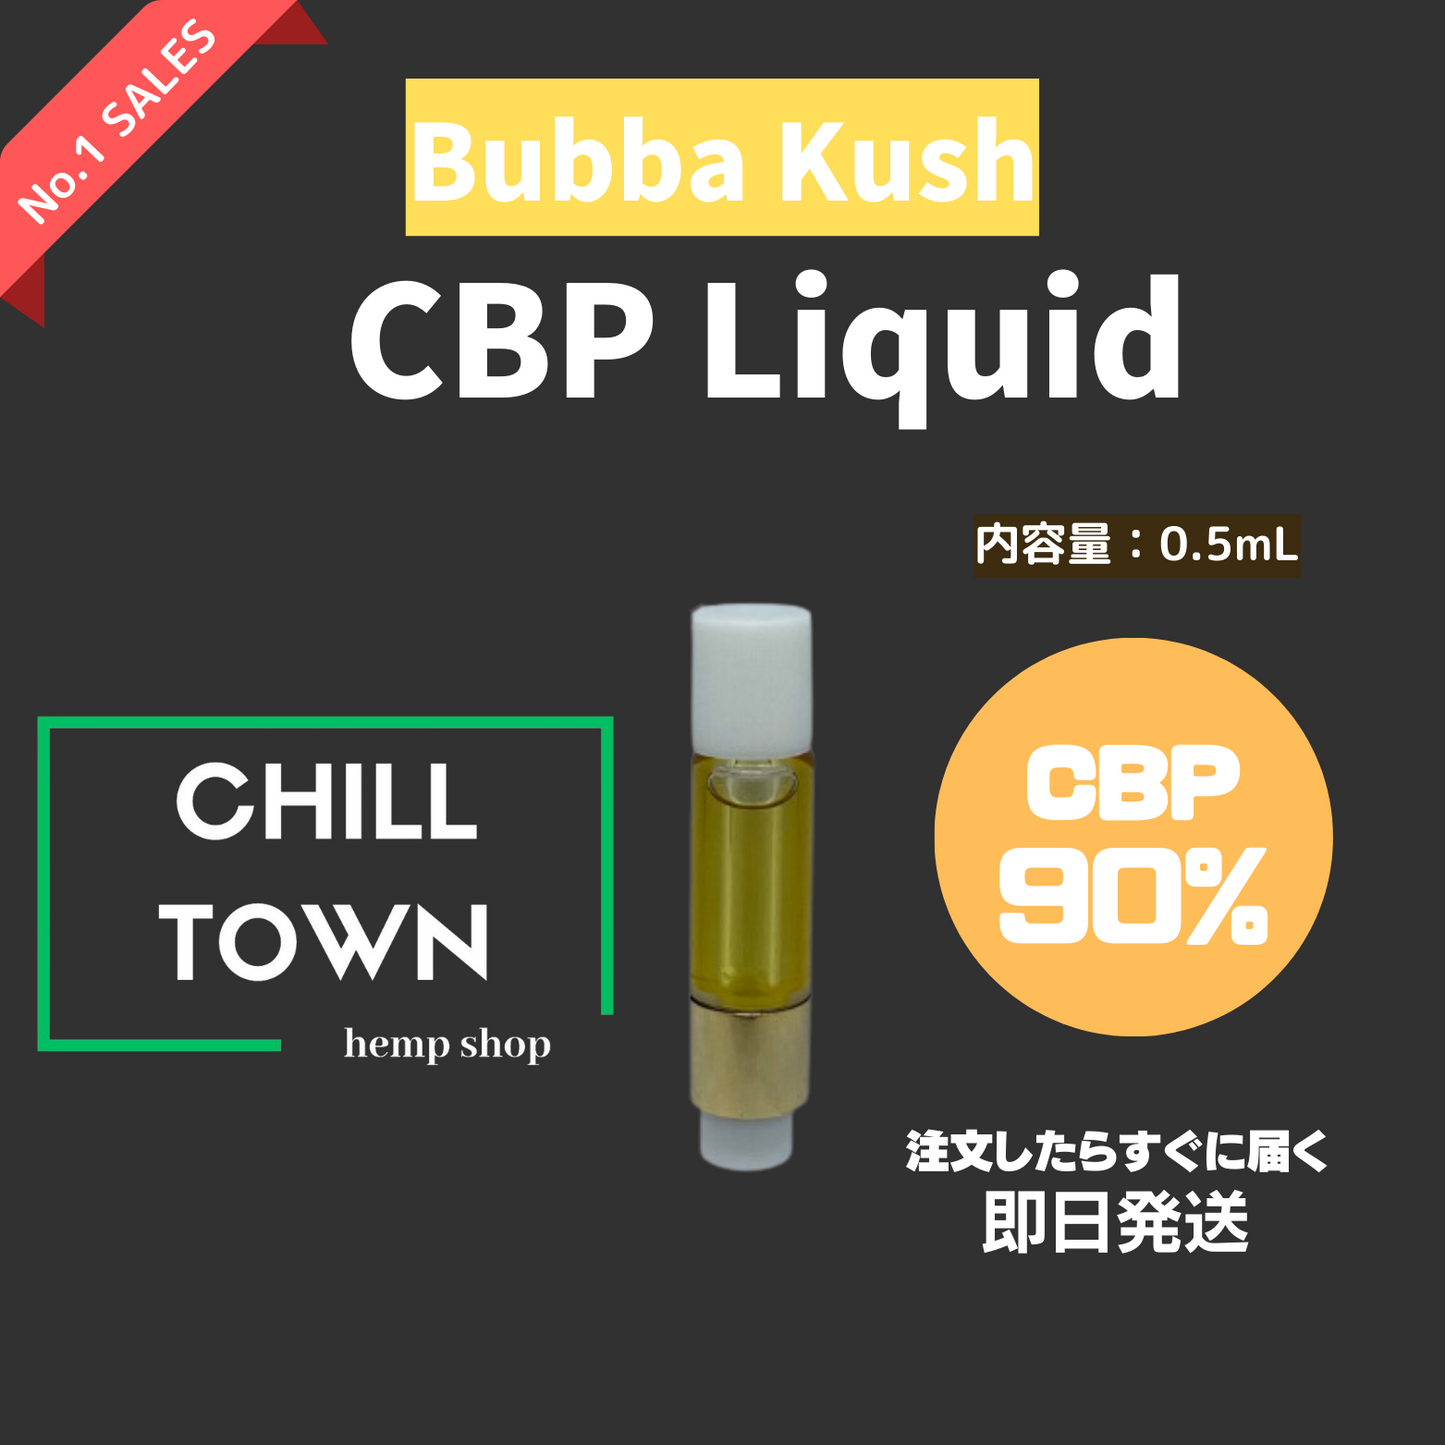 CBPリキッド90% (Bubba kush)